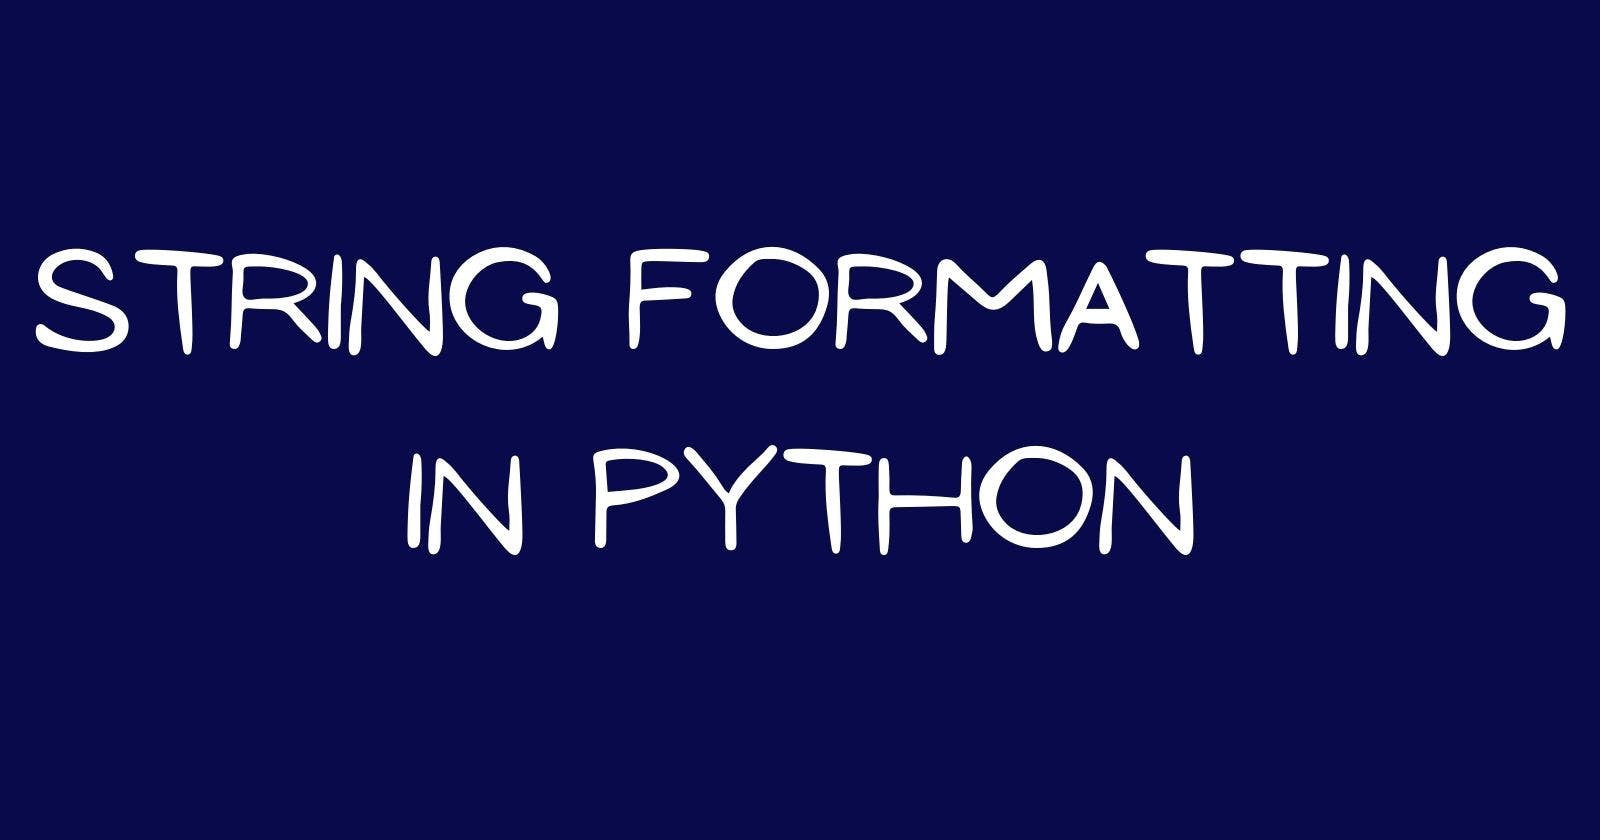 String Formatting in Python